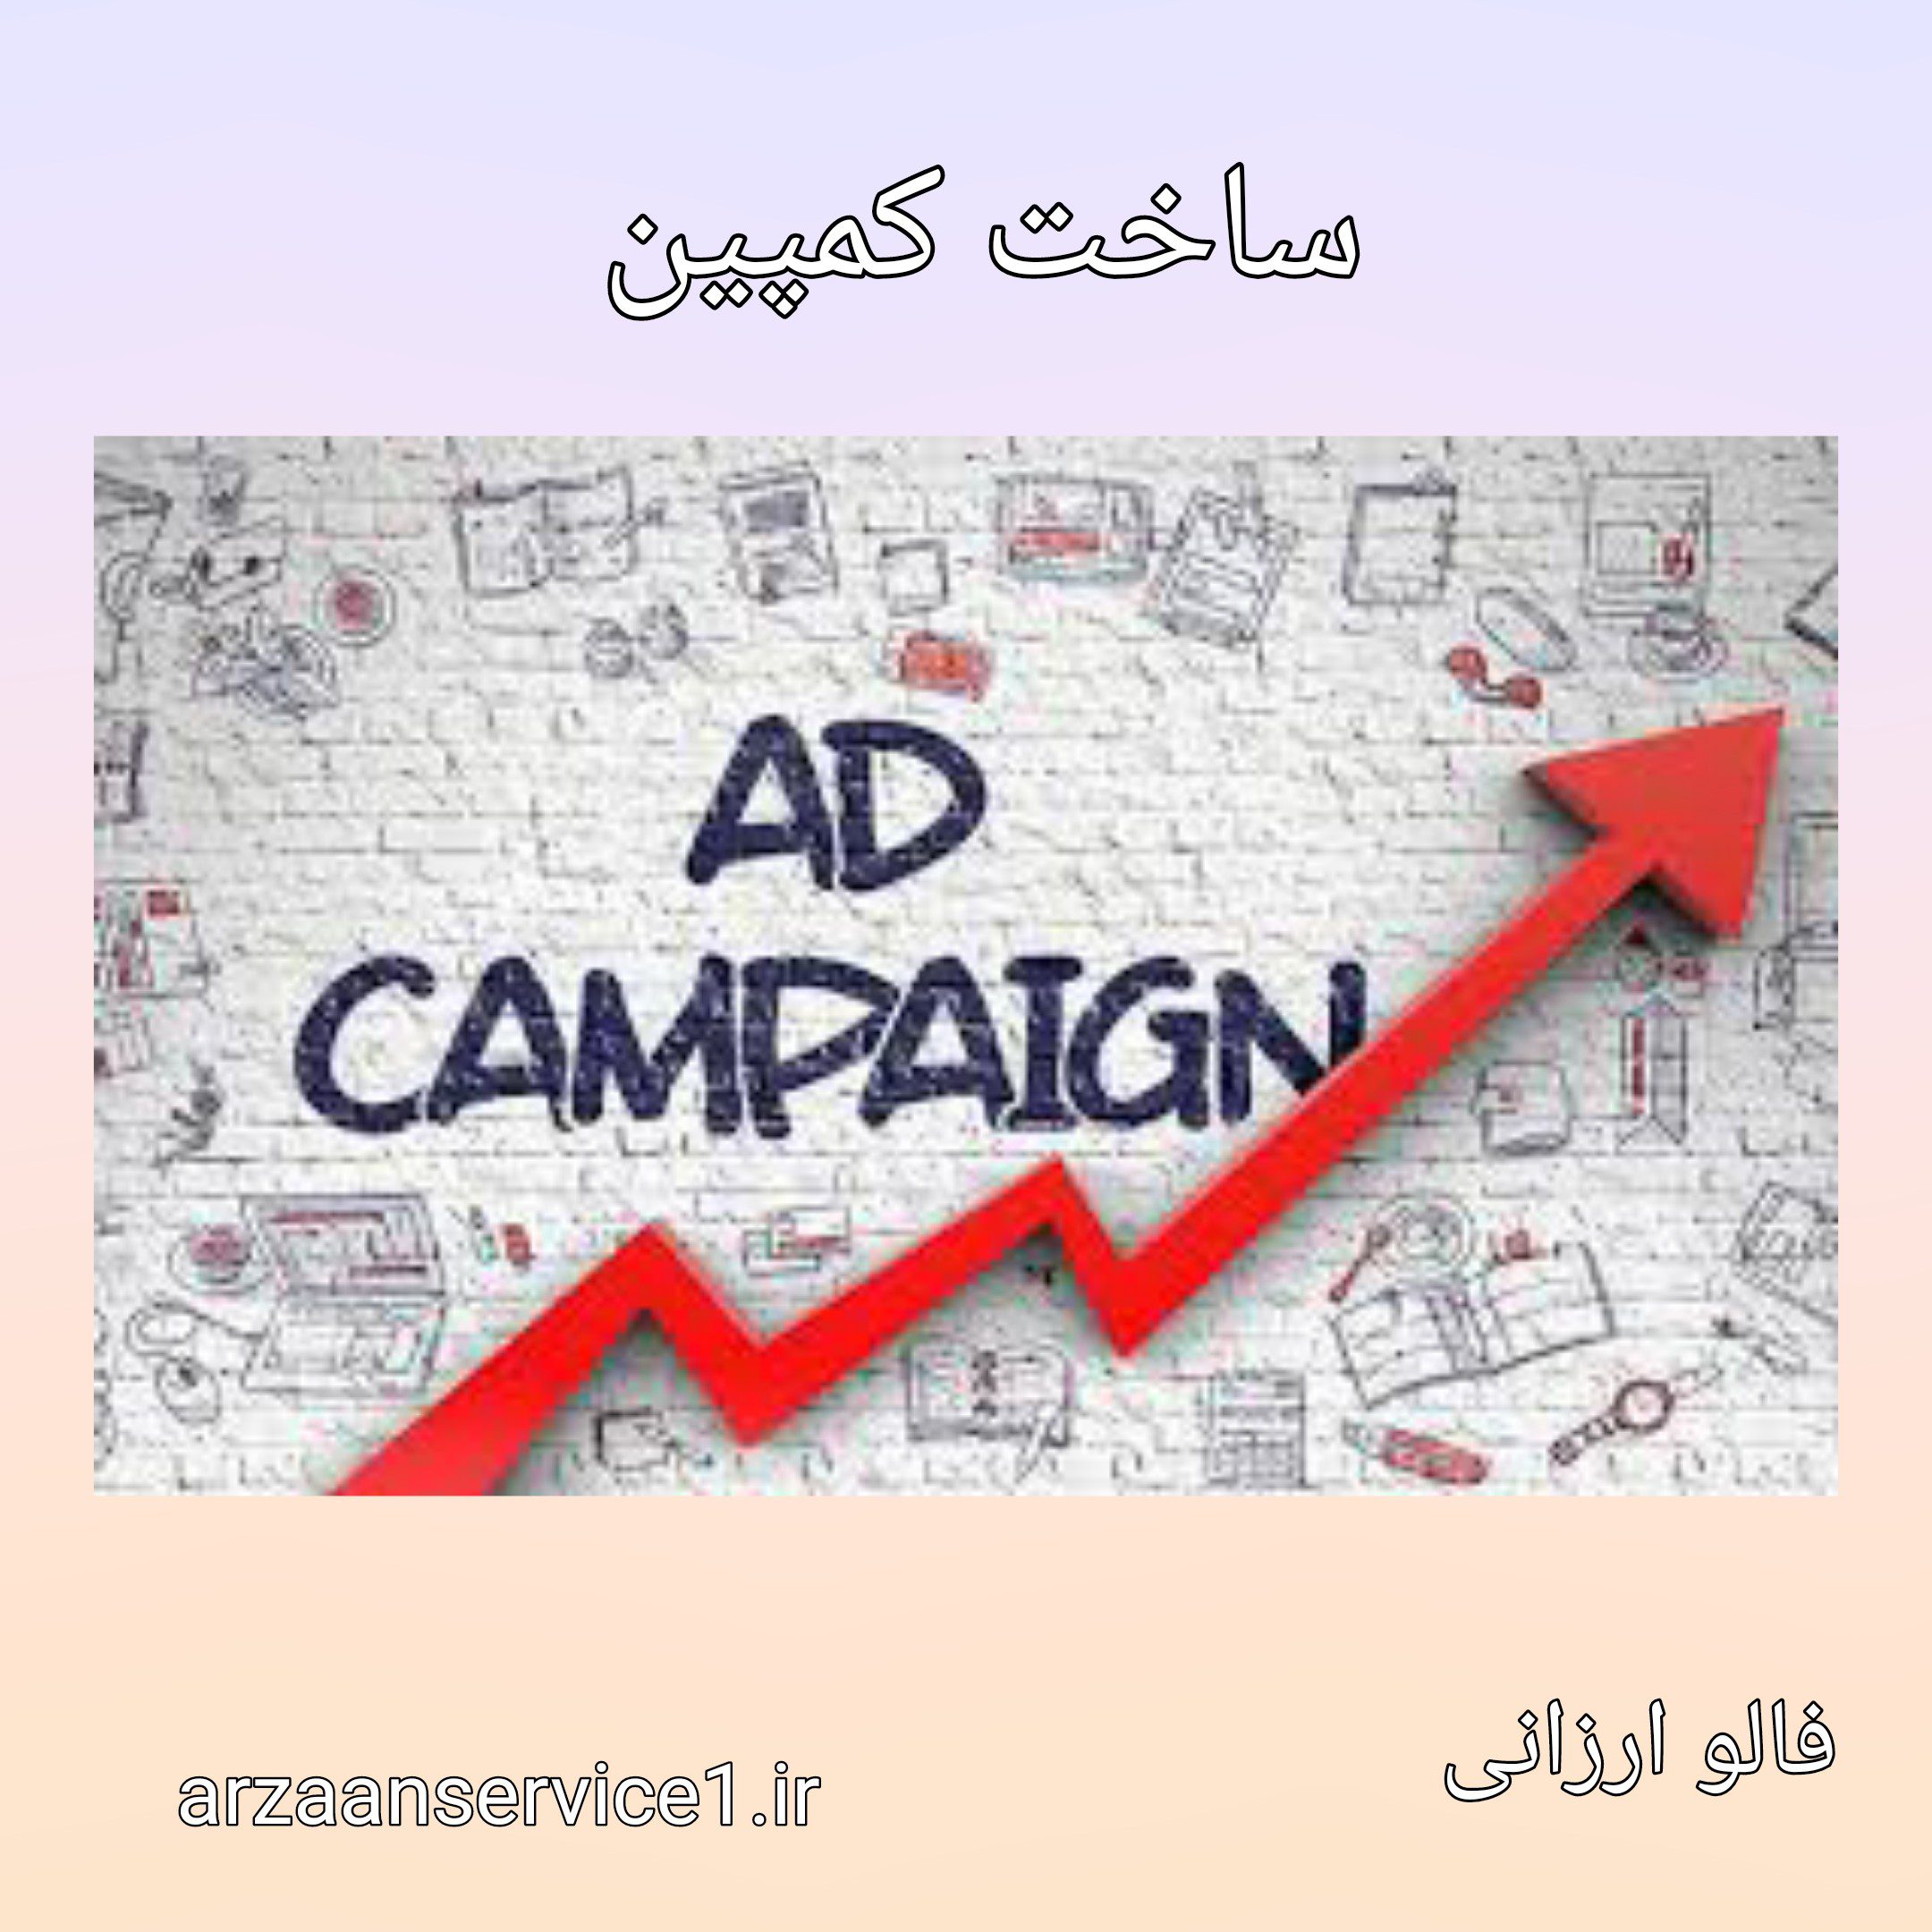 تبلیغات ،کمپین تبلیغاتی ،نحوه ساخت کمپین تبلیغاتی ،ابزارهای مورد استفاده در طراحی کمپین ،تبلیغات اینستاگرام